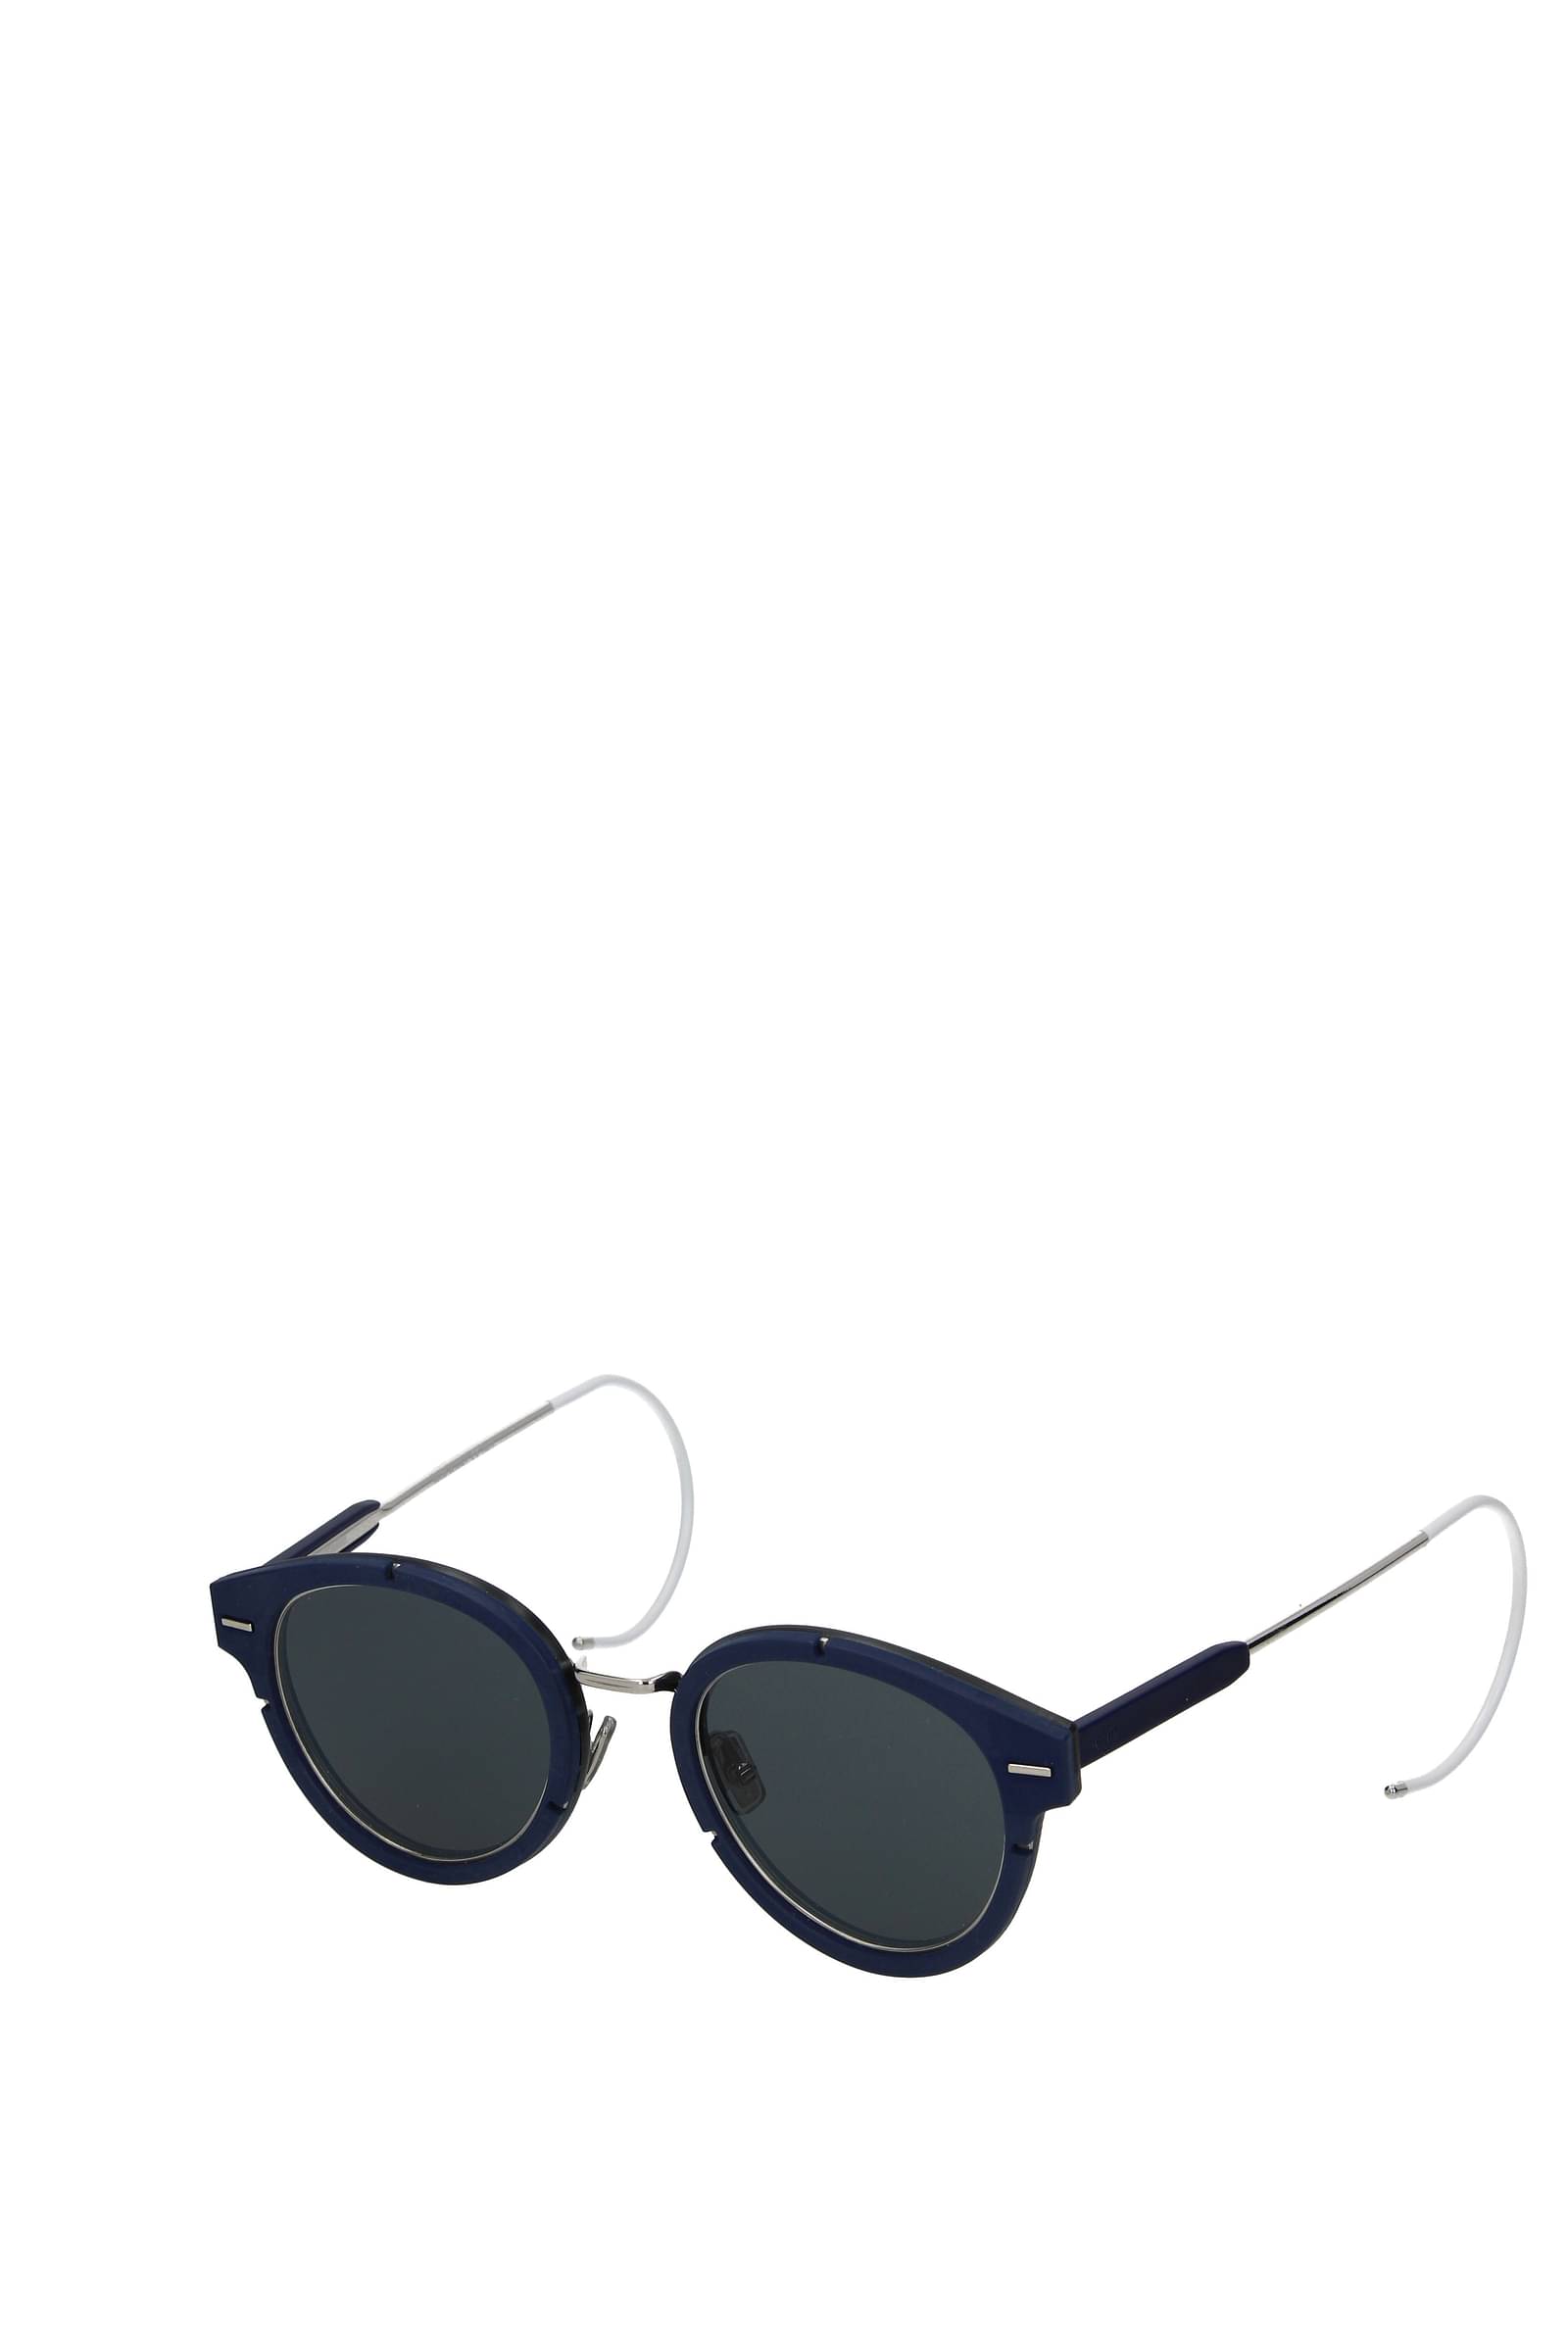 Dior Chroma 1 hombre Gafas de sol venta online